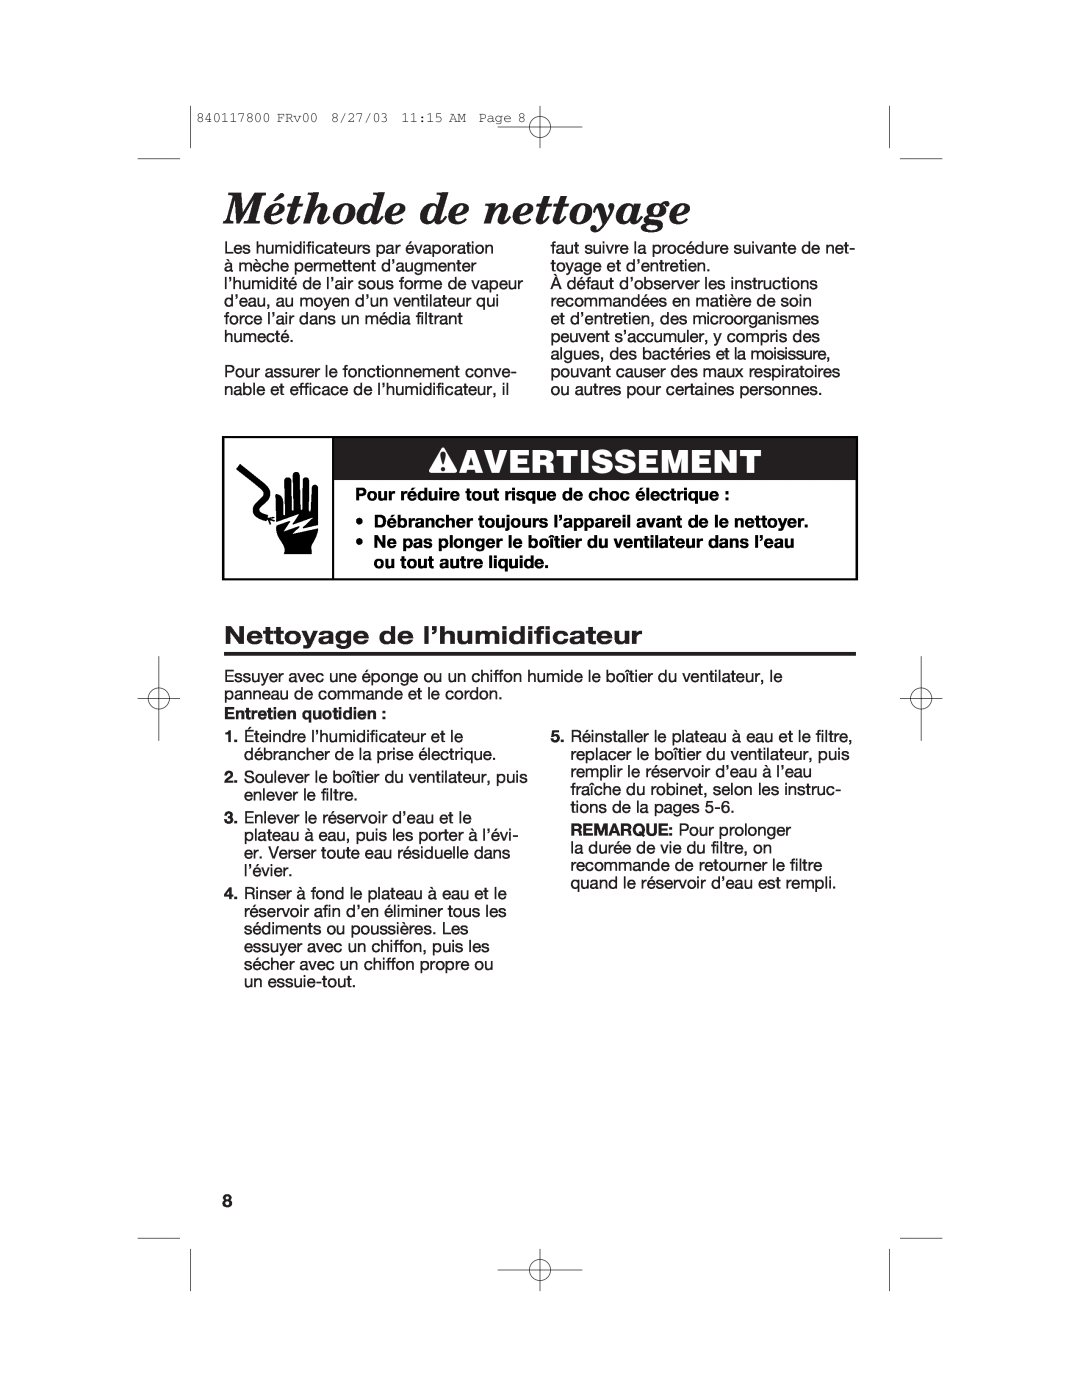 Hamilton Beach 840117800 manual Méthode de nettoyage, wAVERTISSEMENT, Nettoyage de l’humidificateur, Entretien quotidien 